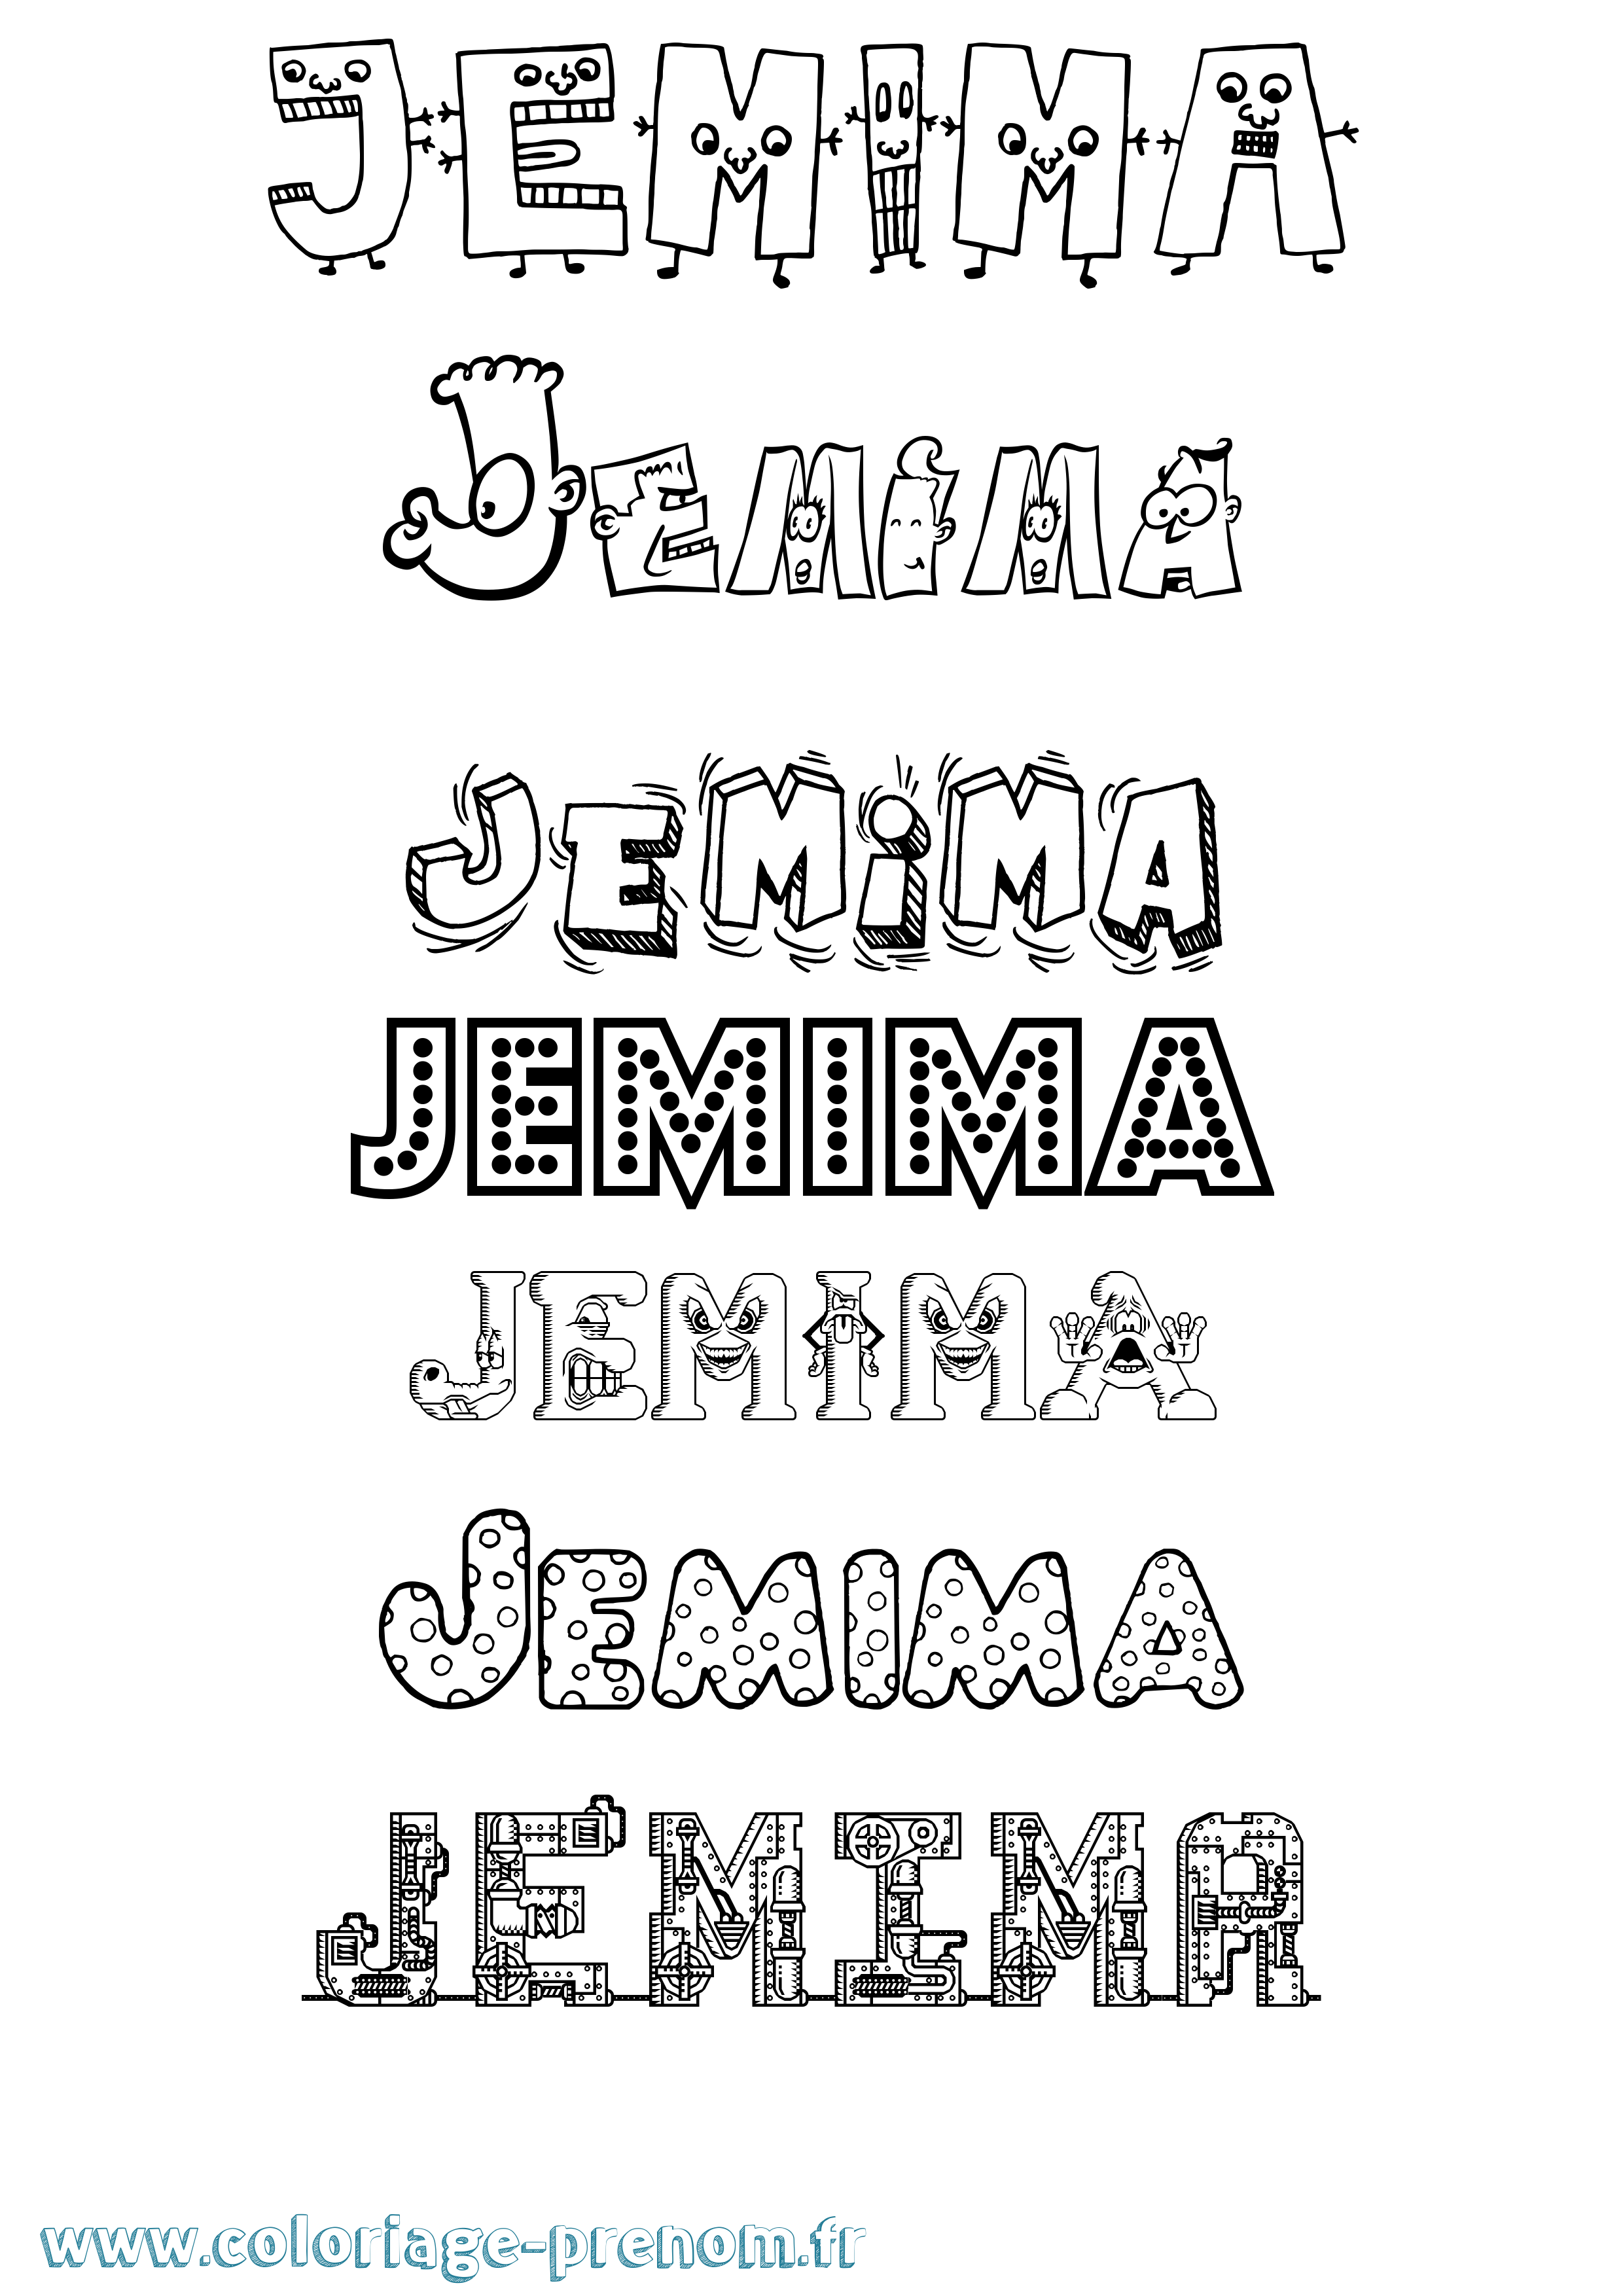 Coloriage prénom Jemima Fun